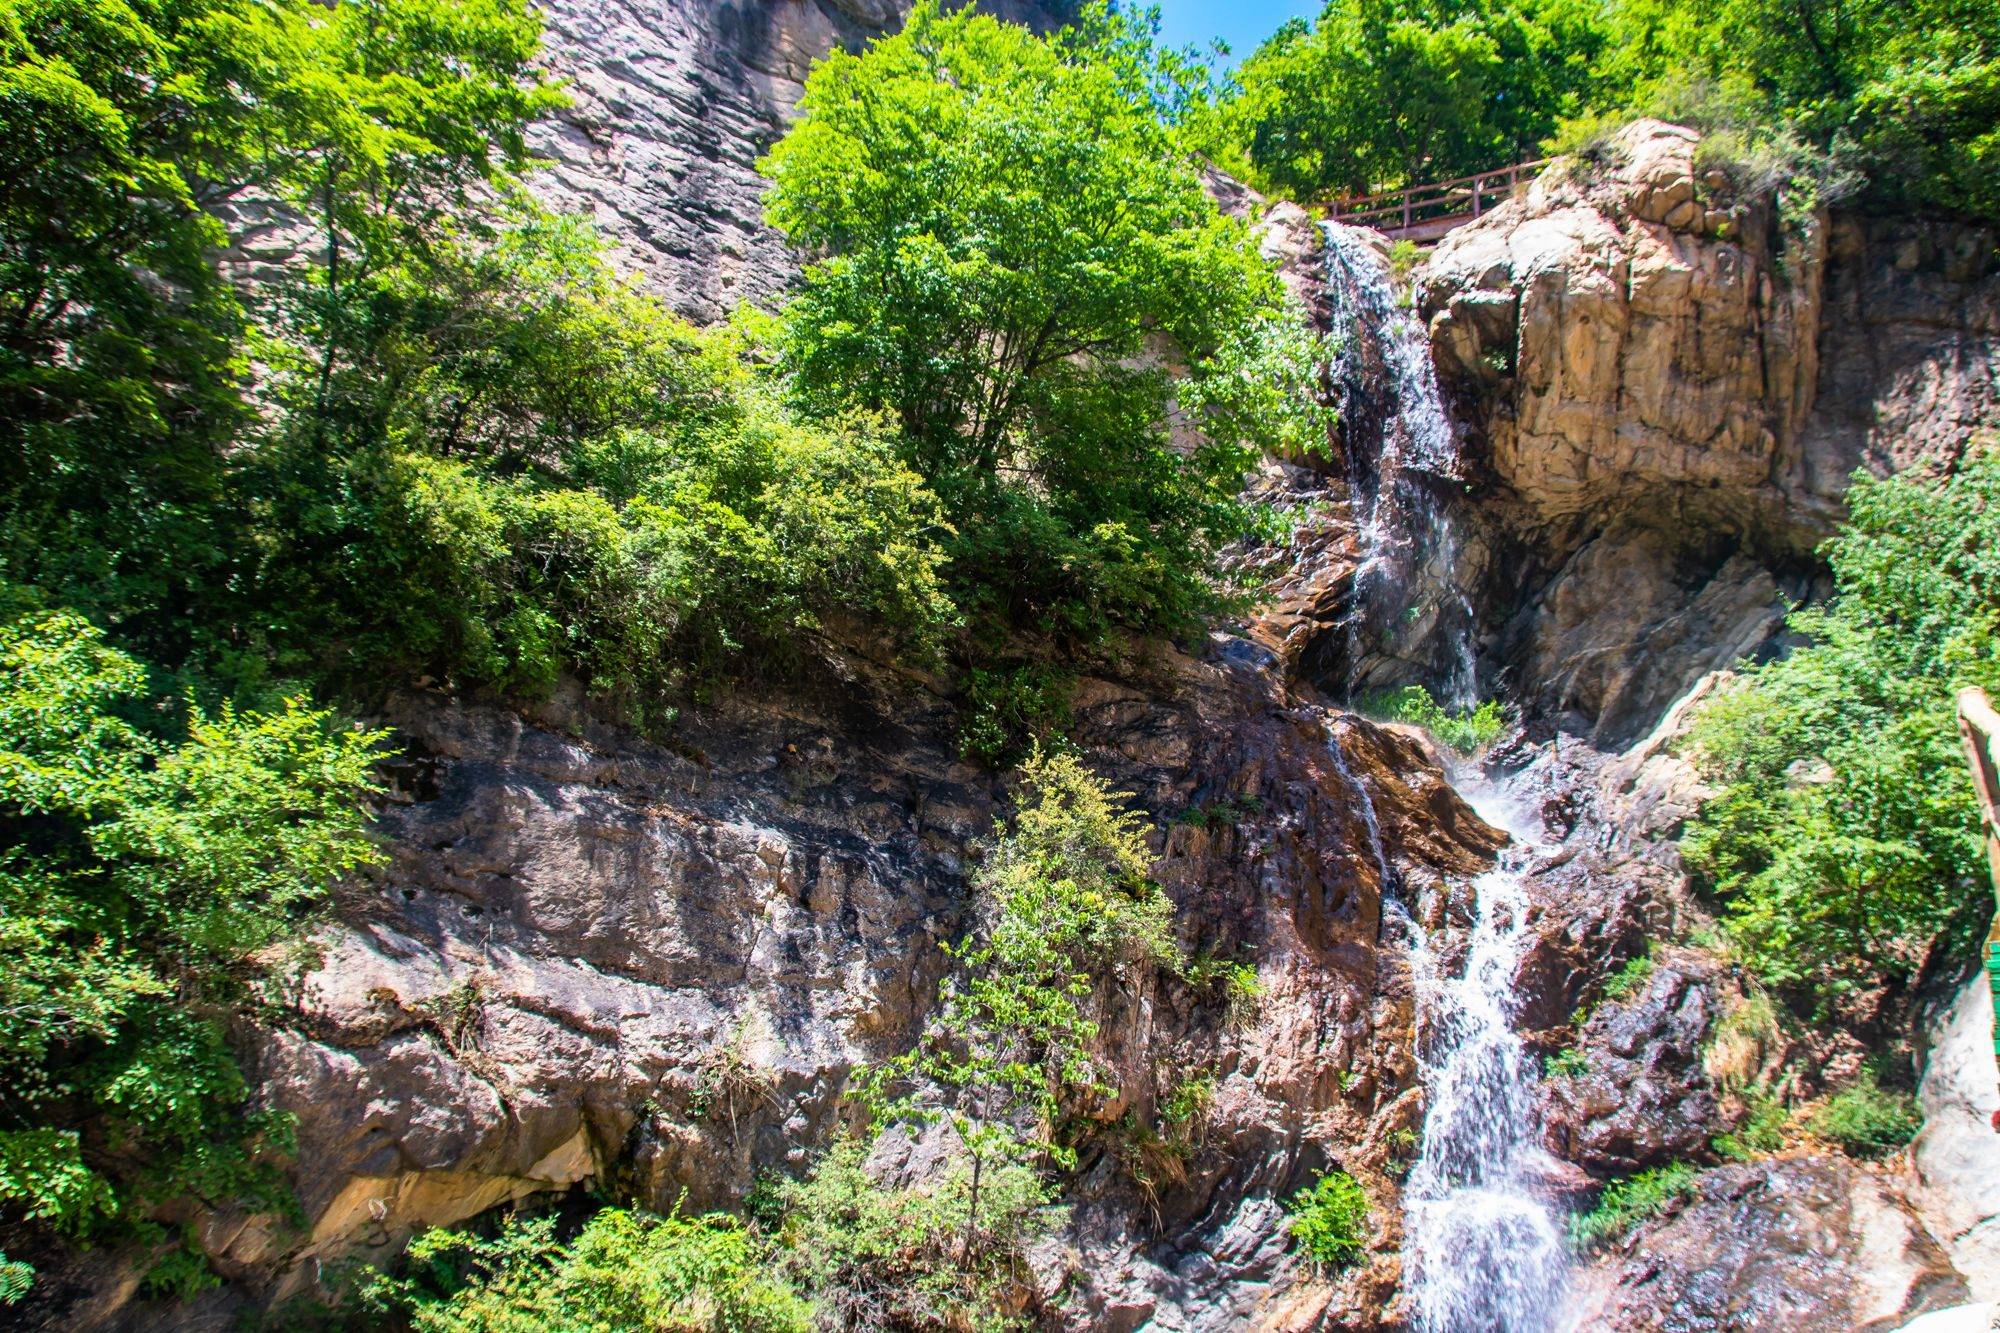 石家庄黑山大峡谷,环境秀美,植被众多,是夏日避暑的好去处